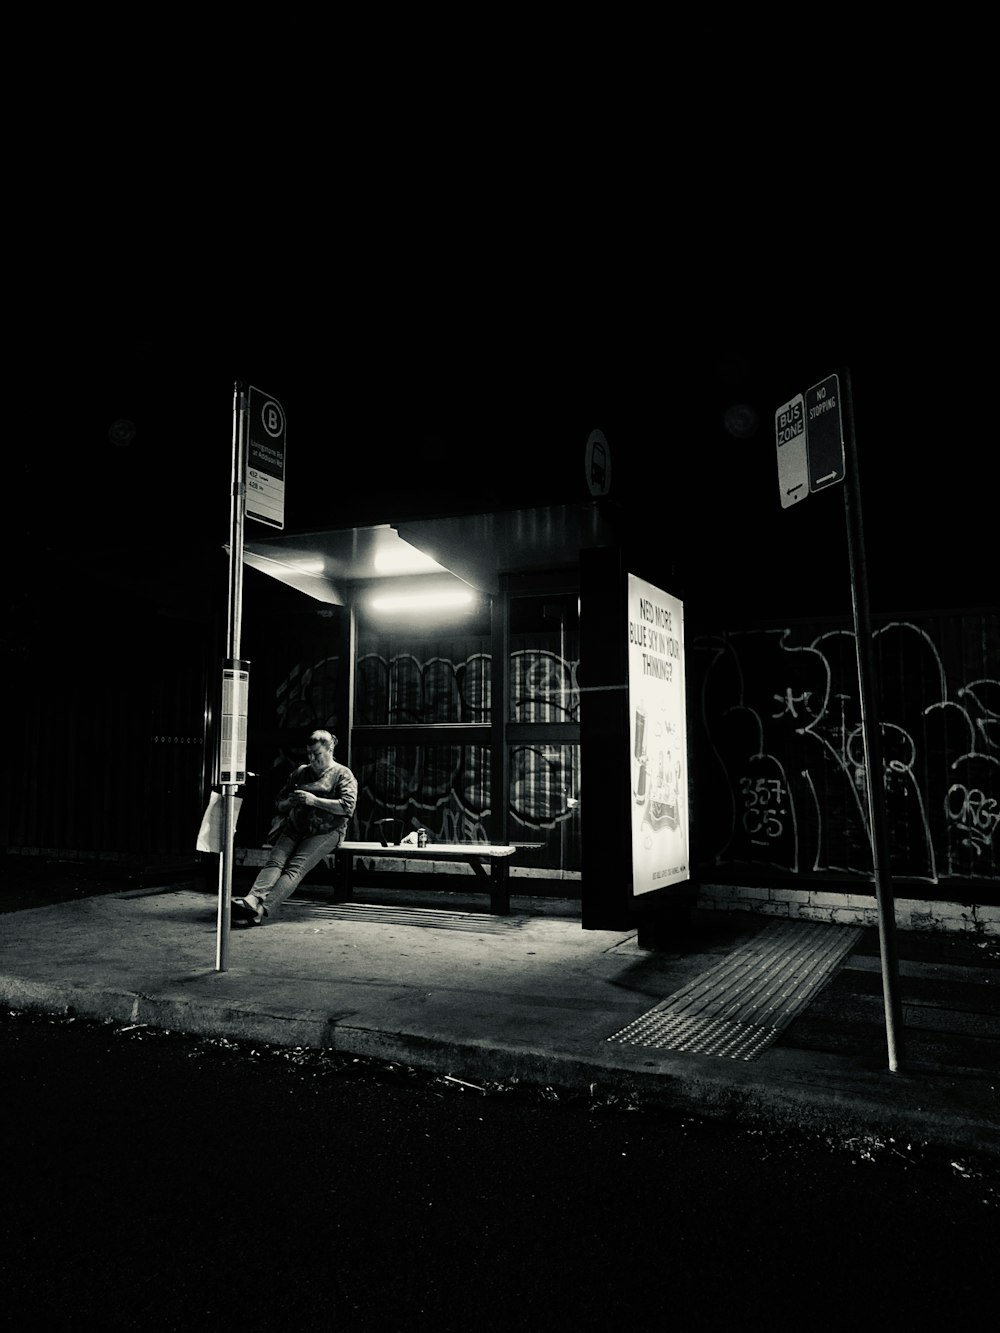 Mann in schwarzer Jacke und Hose sitzt nachts auf der Bank in der Nähe der Straßenlaterne